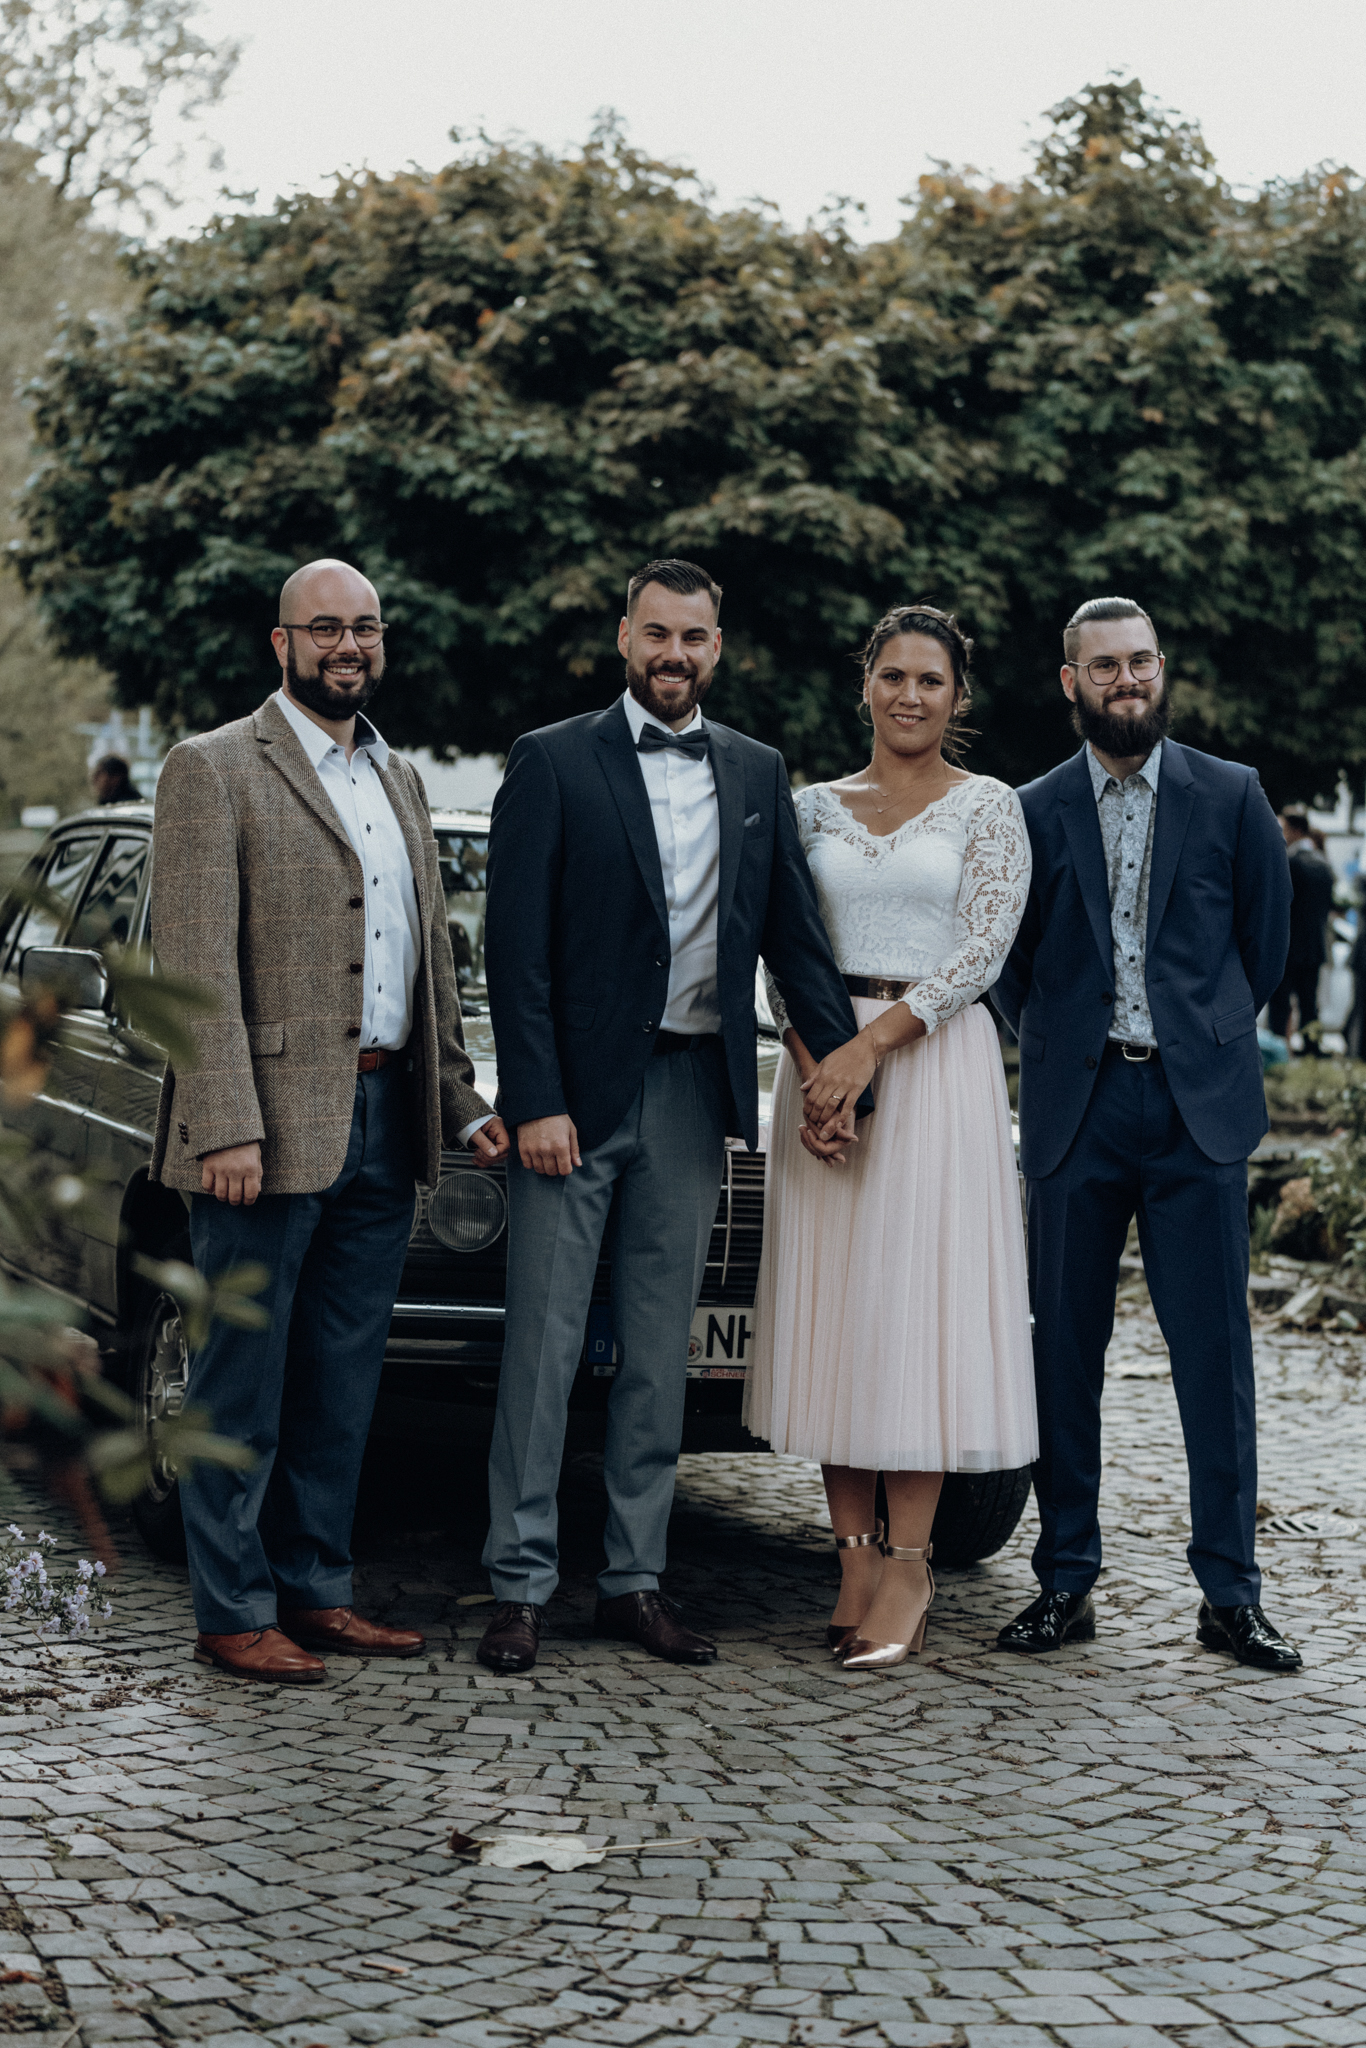 Gruppenfoto mit der Braut, Bräutigam und den Trauzeugen